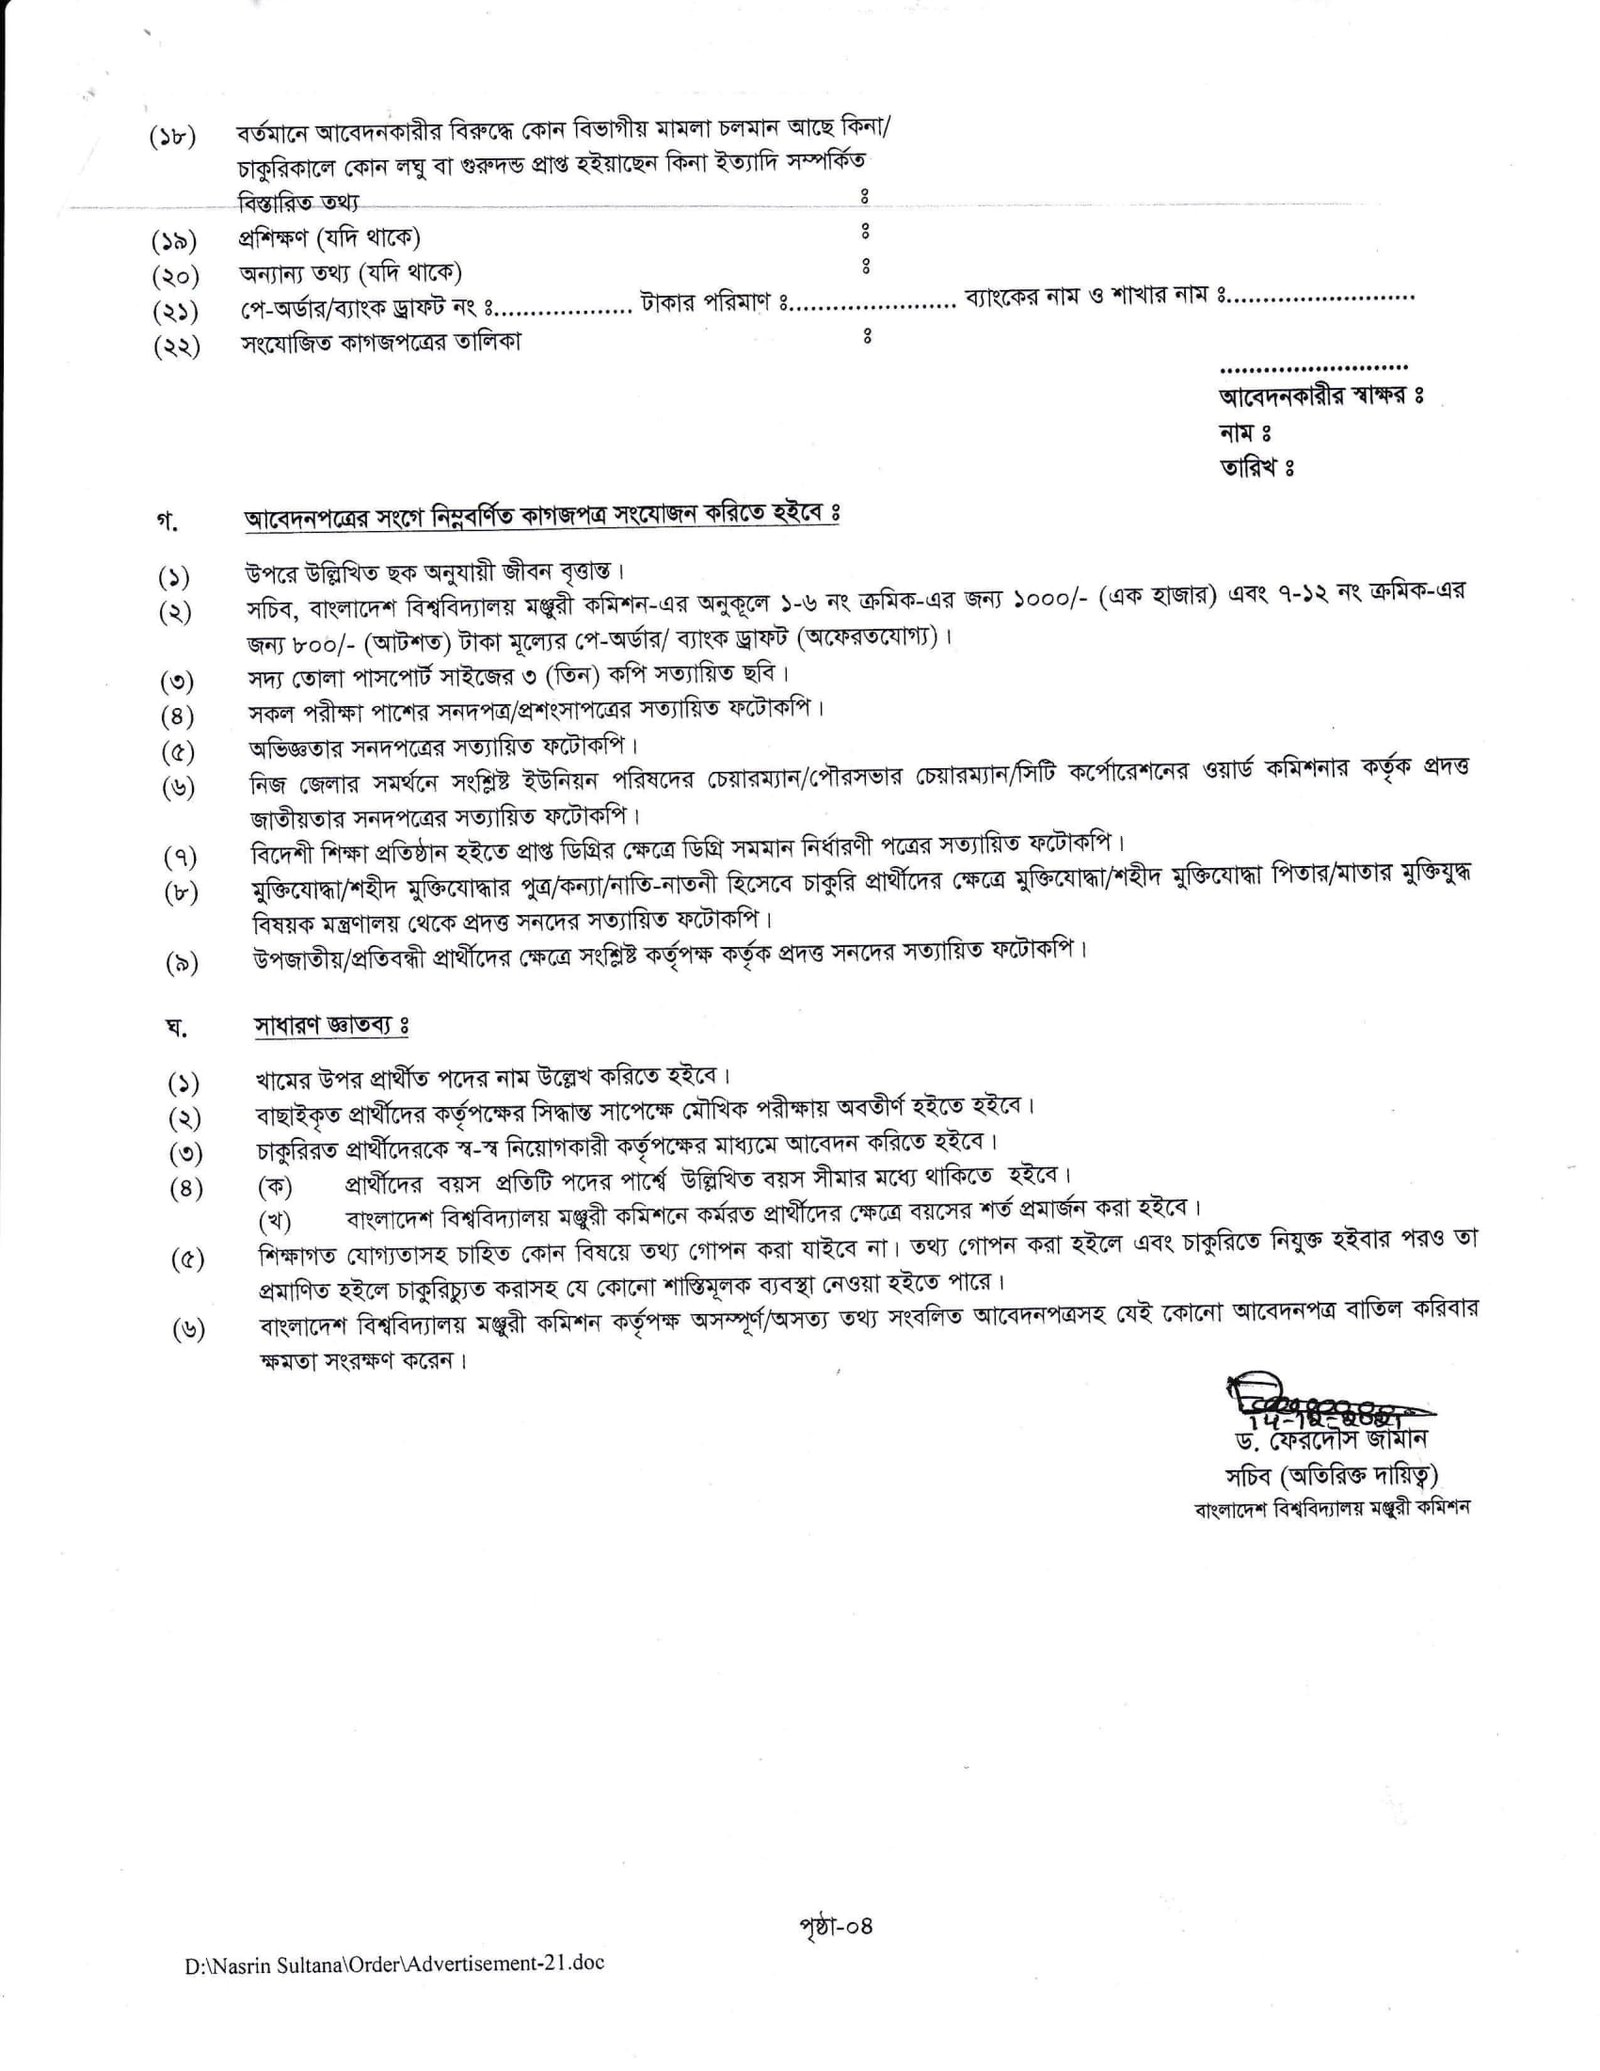 UGC Job Circular 2021 Official Image